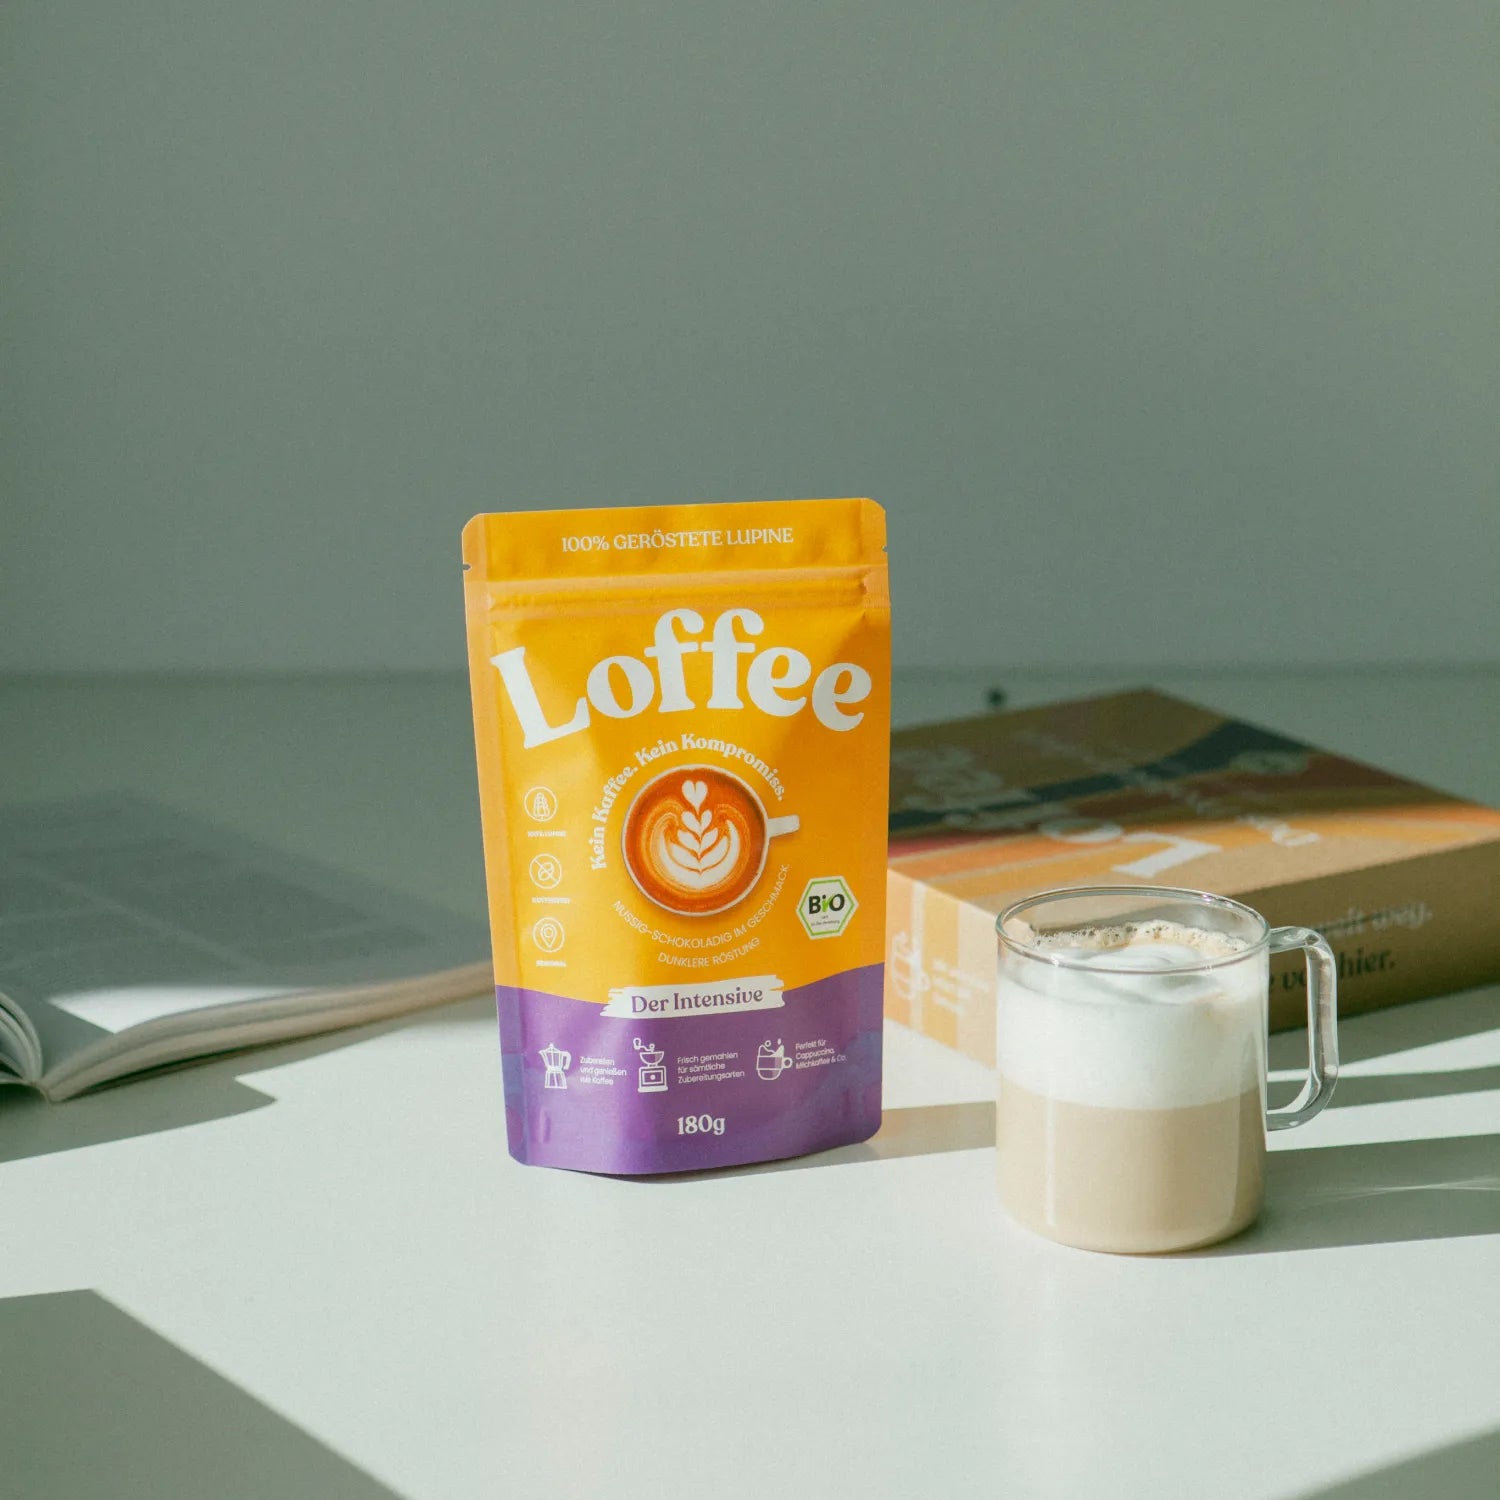 Organic lupin coffee - "The Intensive" Loffee